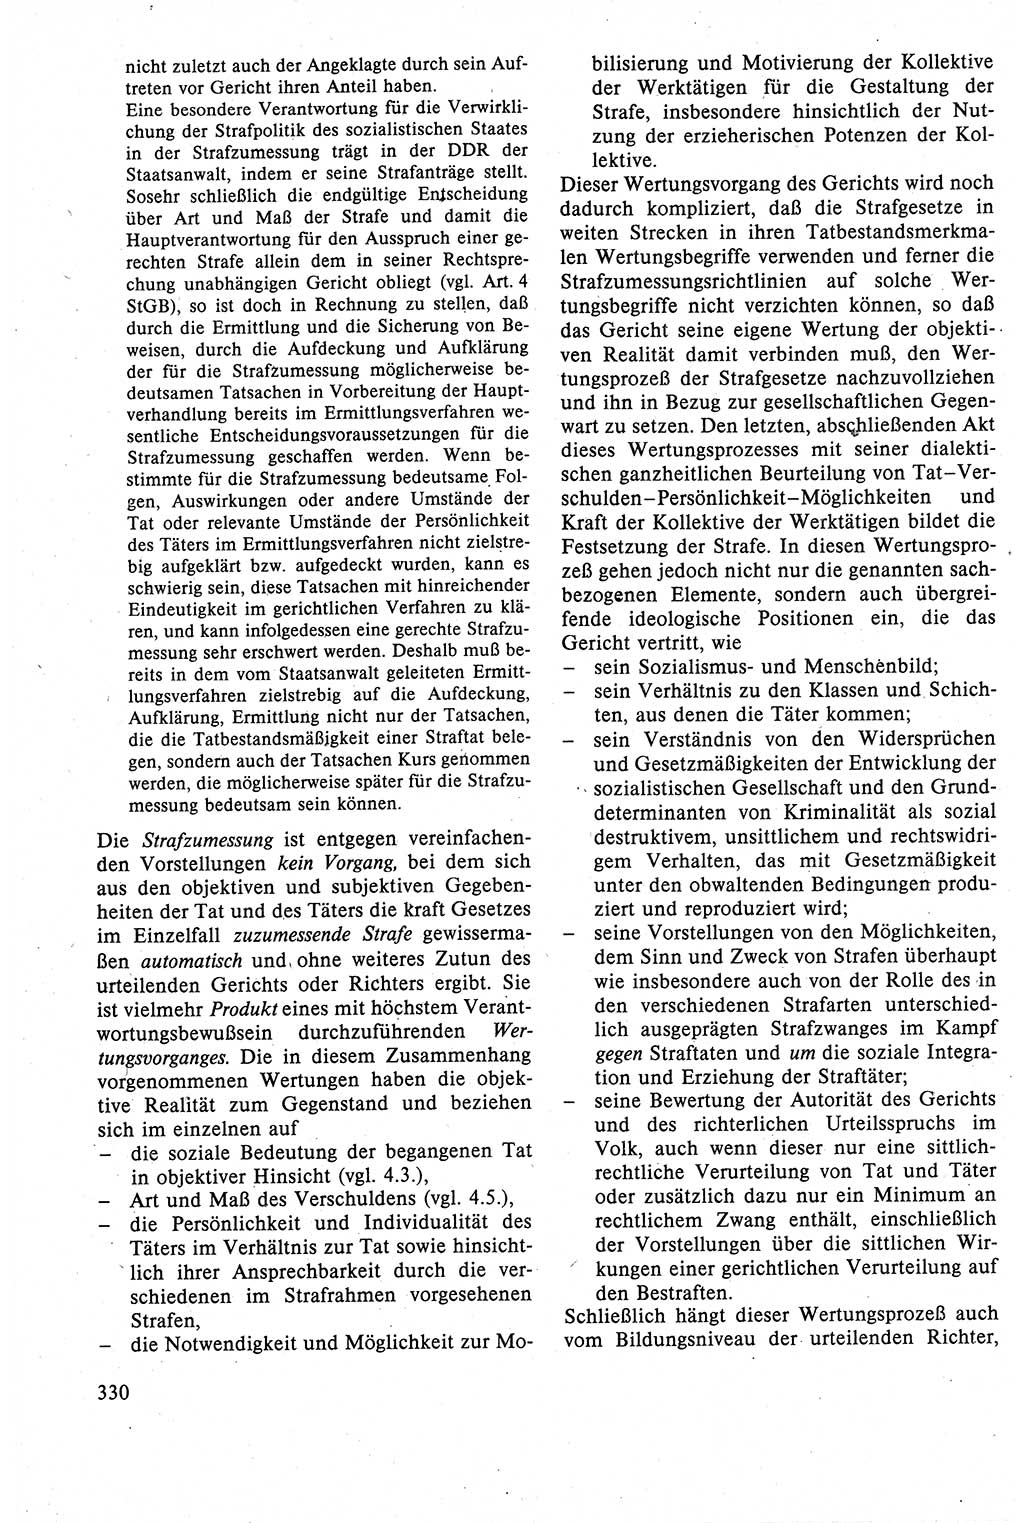 Strafrecht der DDR (Deutsche Demokratische Republik), Lehrbuch 1988, Seite 330 (Strafr. DDR Lb. 1988, S. 330)